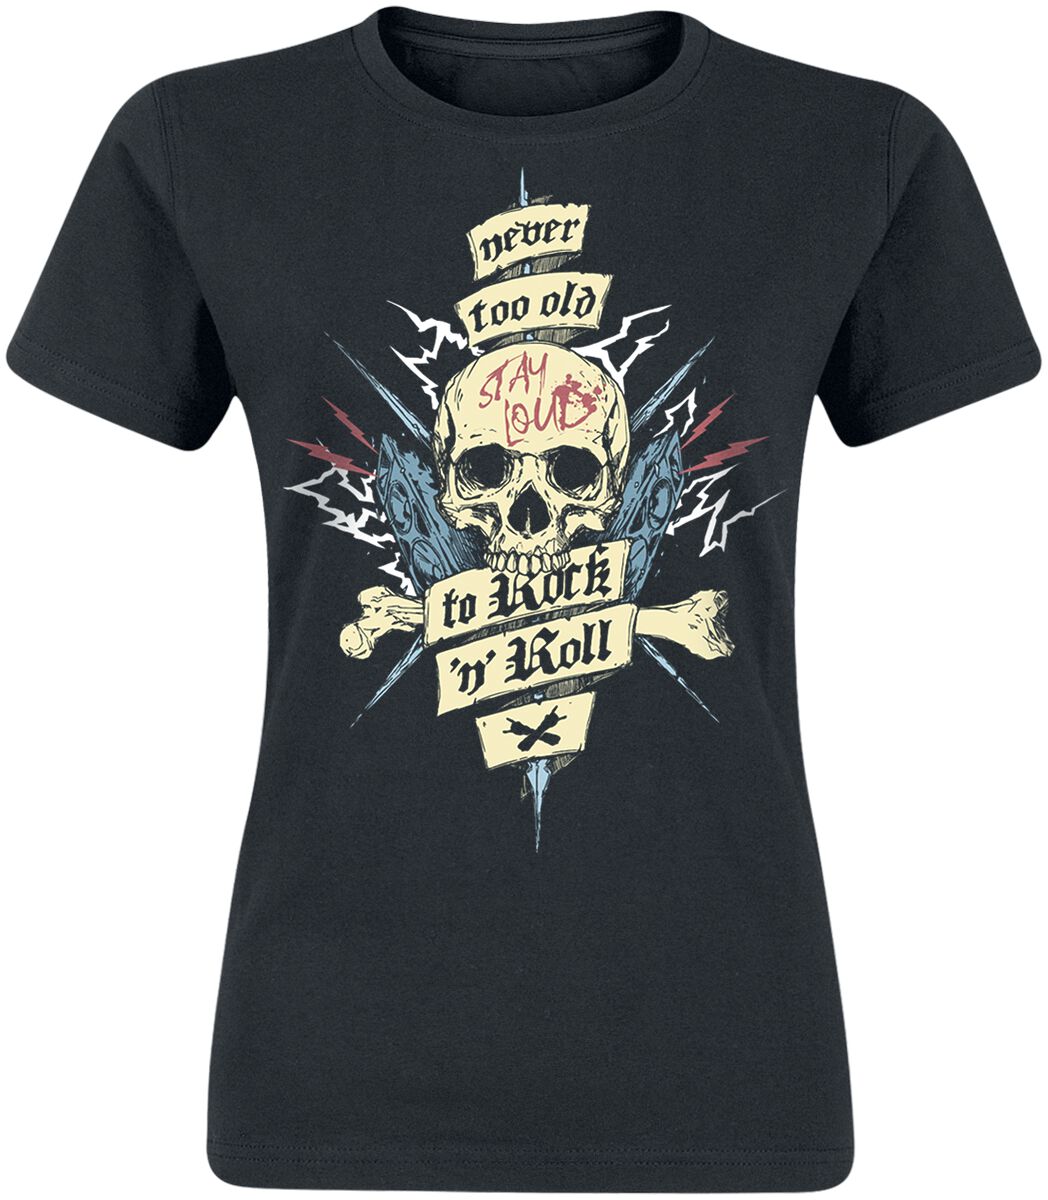 T-Shirt Manches courtes Fun de Slogans - Never Too Old To Rock 'n' Roll - S à XL - pour Femme - noir